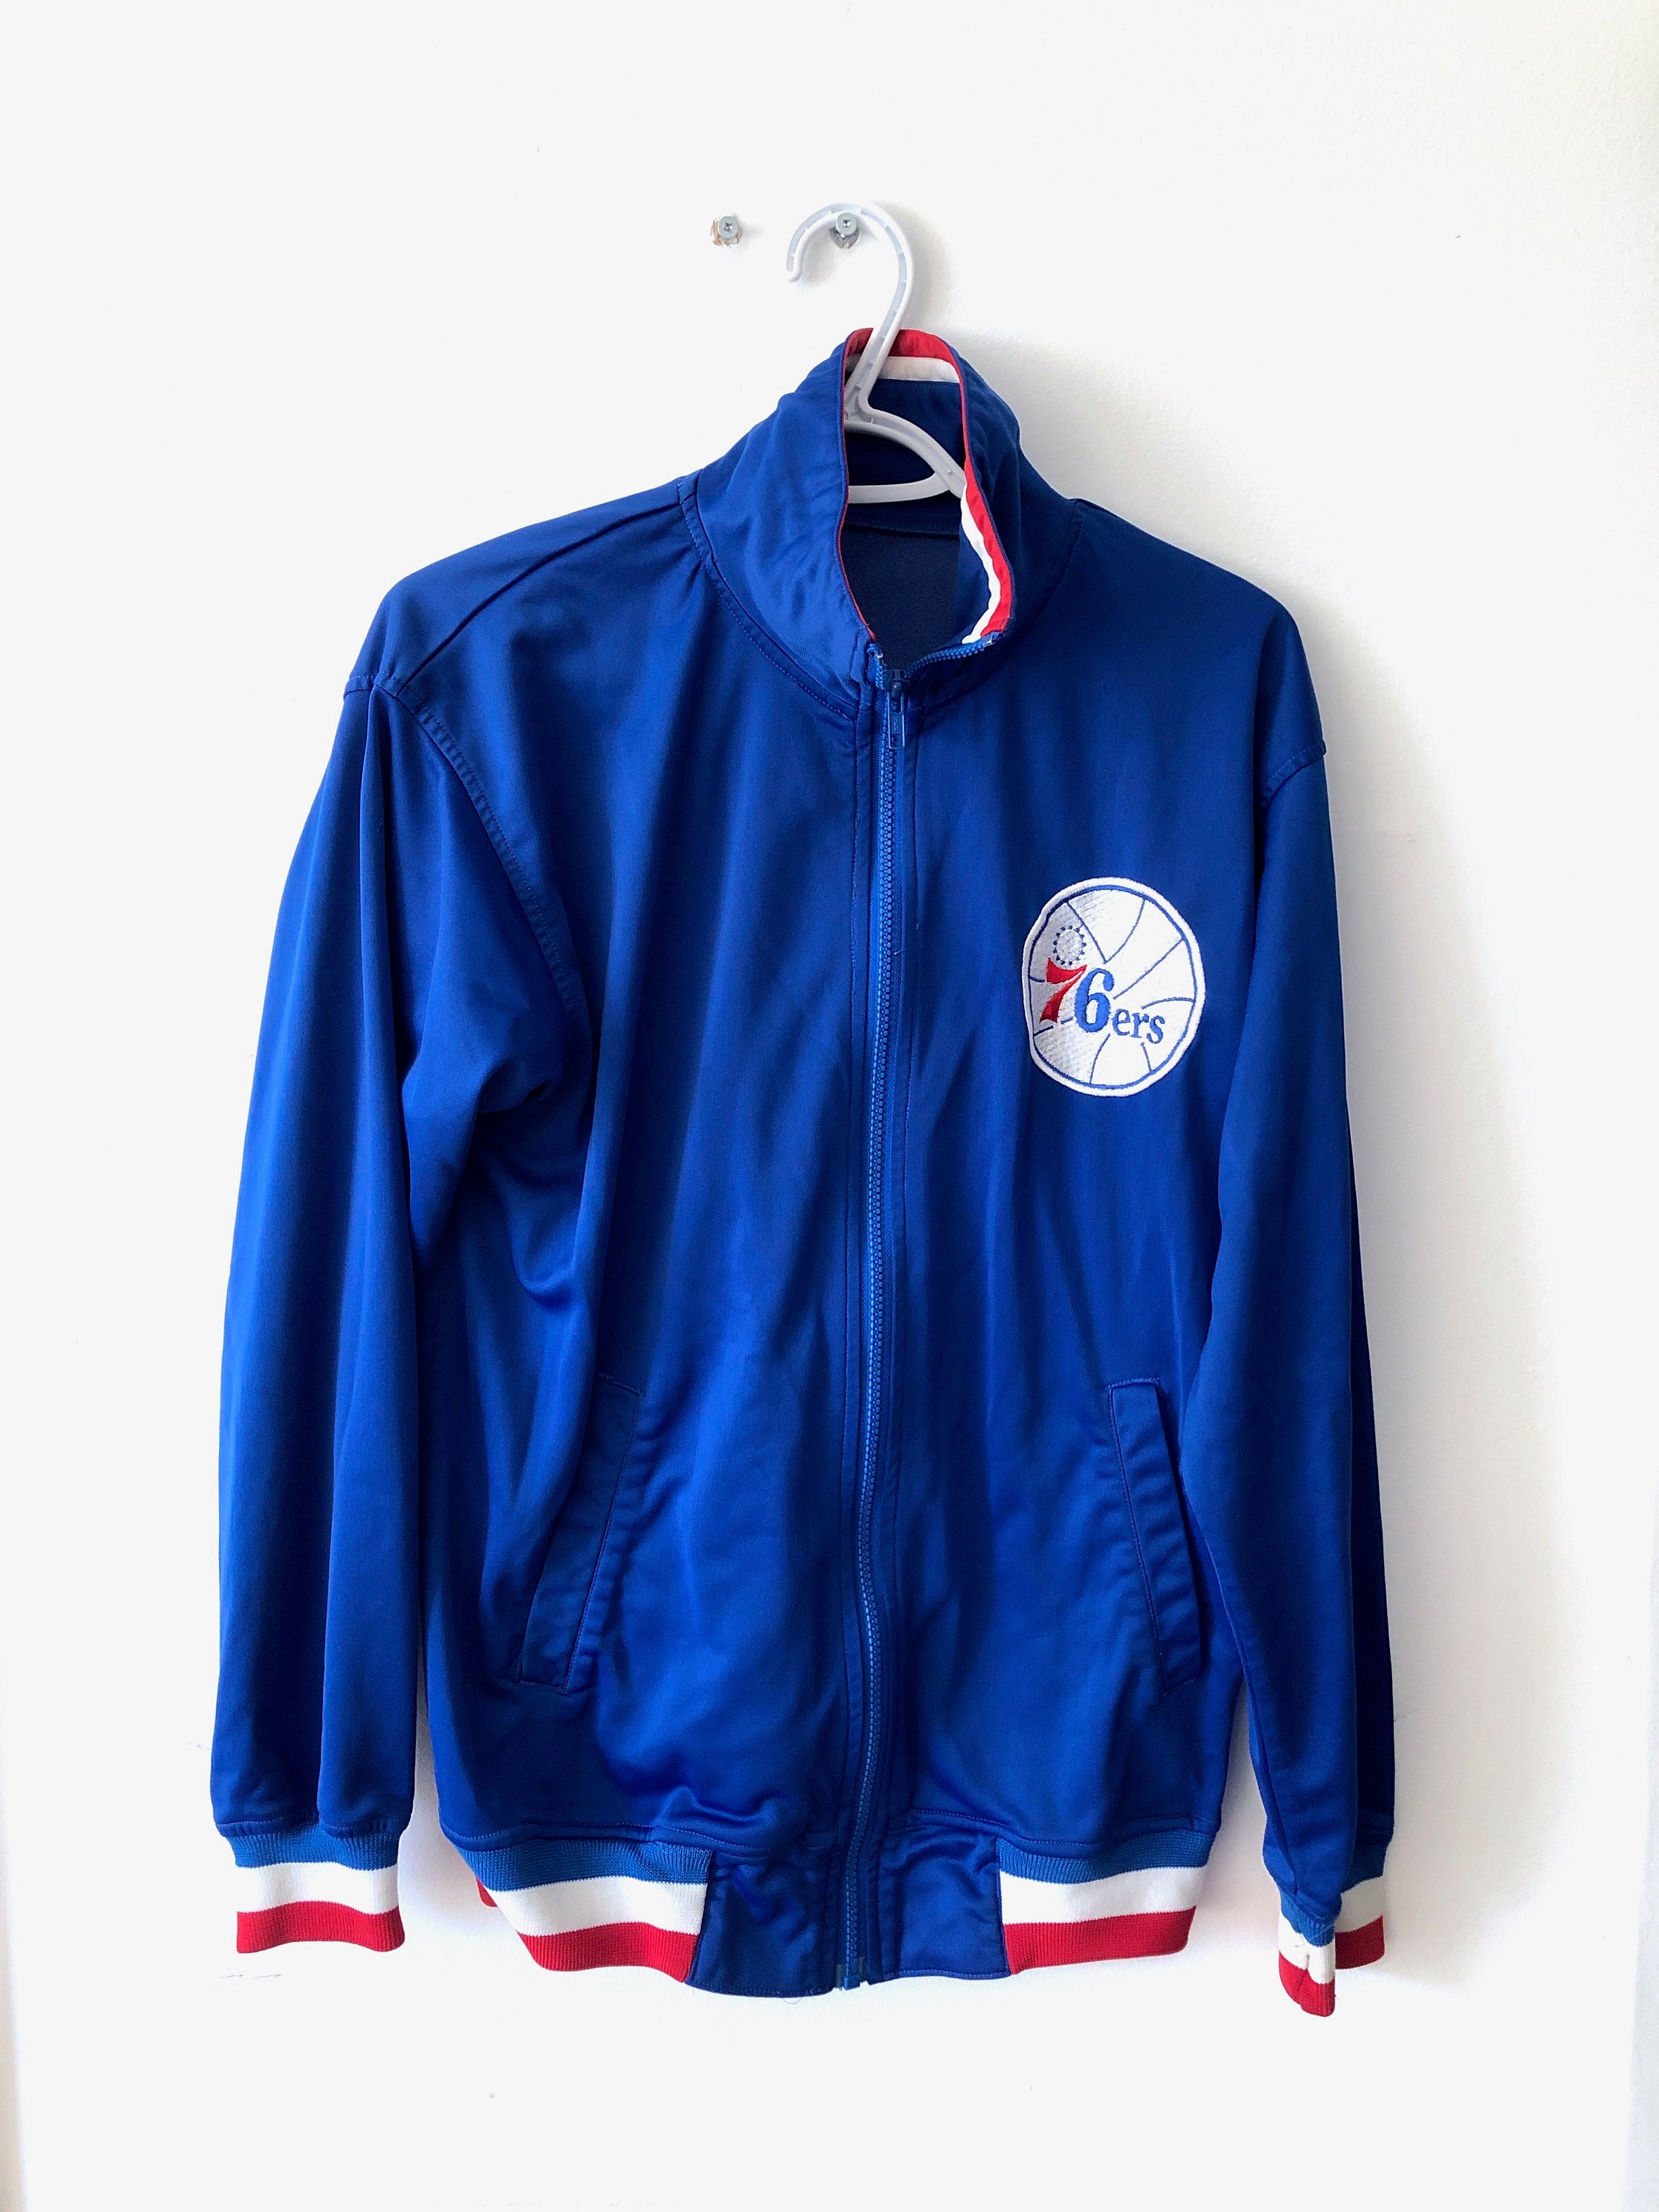 Satin Royal Blue Philadelphia 76ers 90s Jacket - Jackets Expert